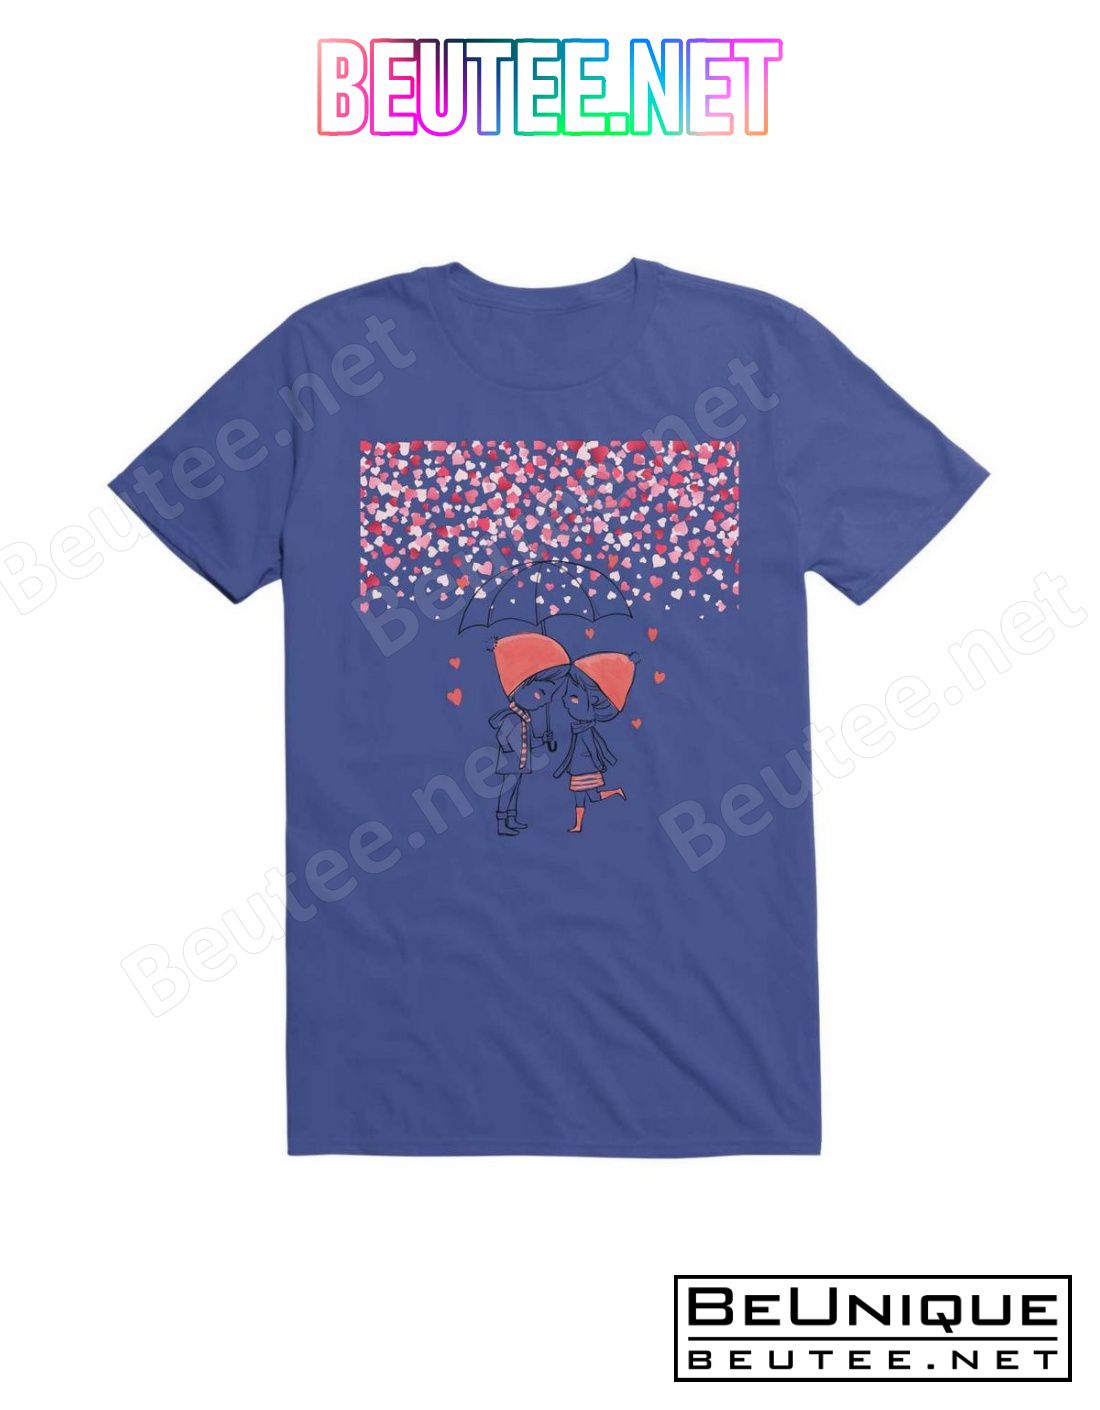 Kawaii Love Rain T-Shirt